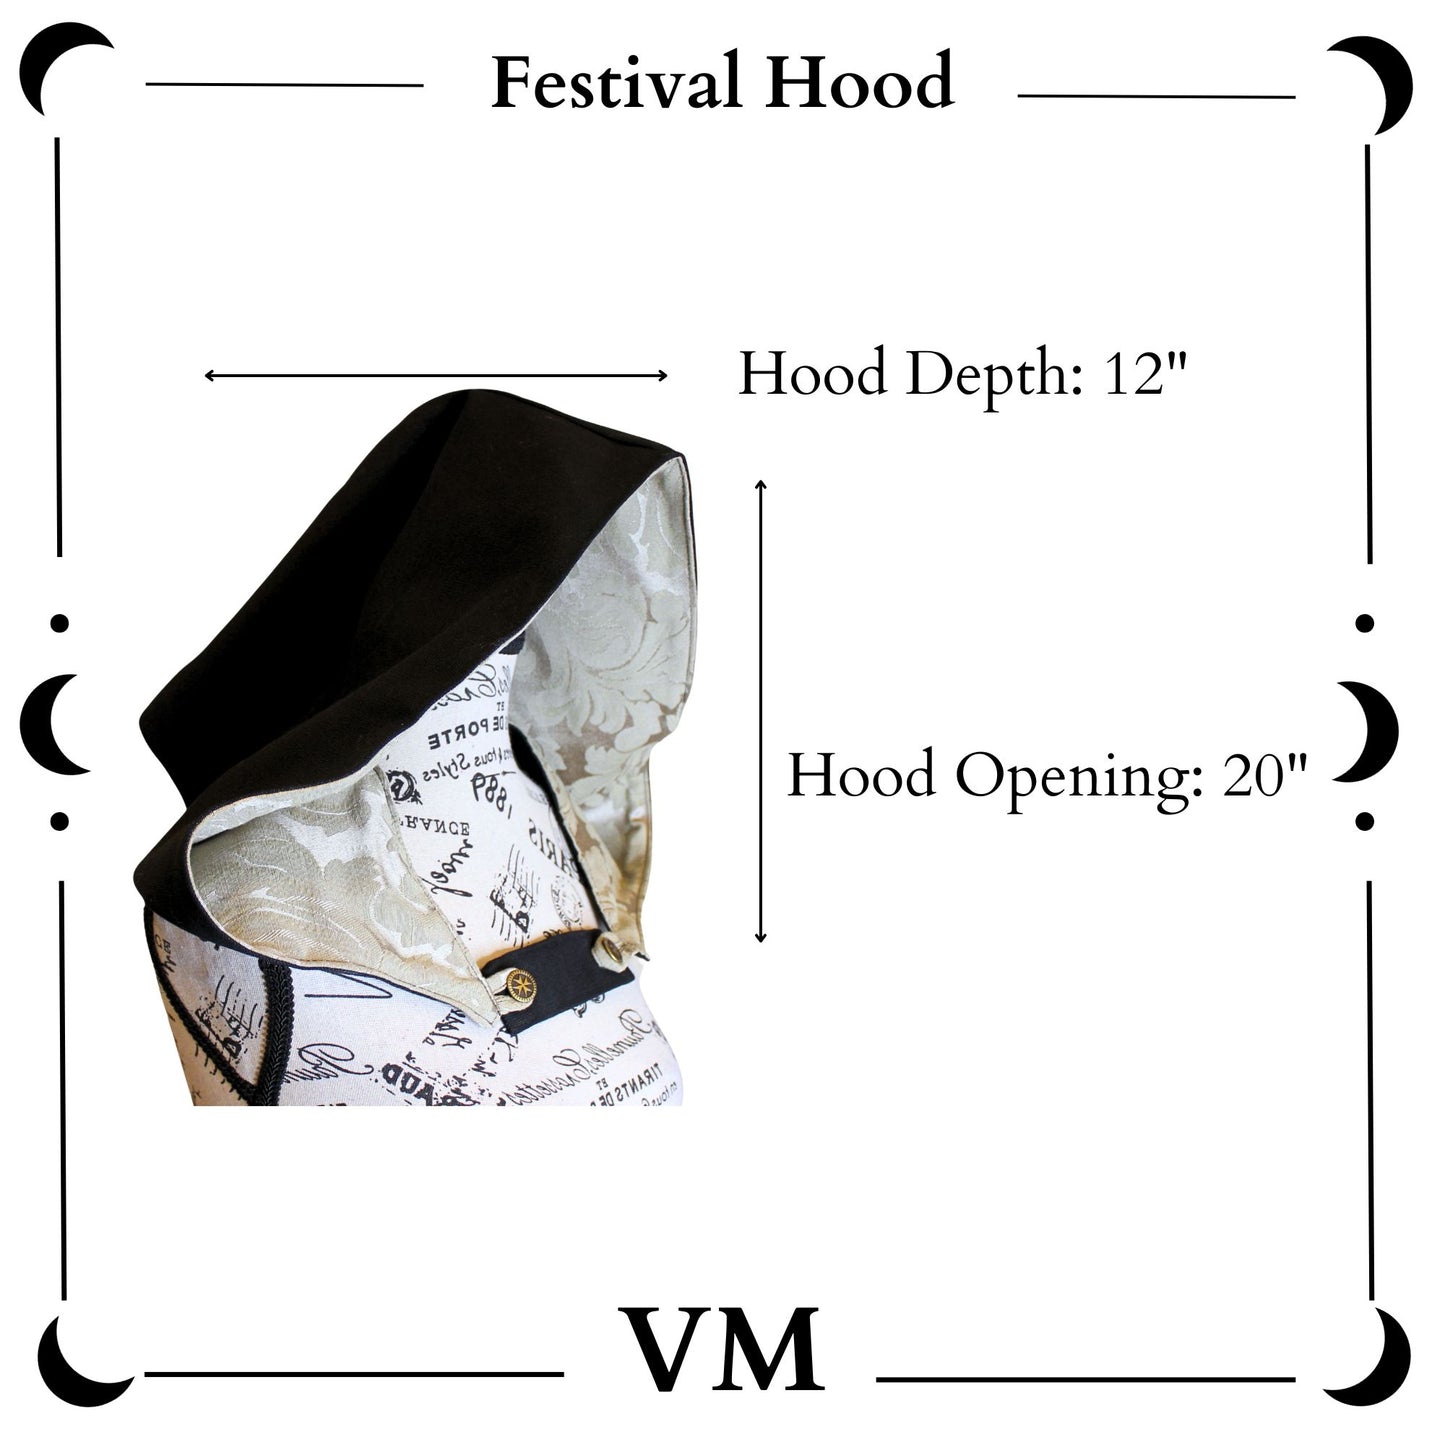 The VM Festival Hood